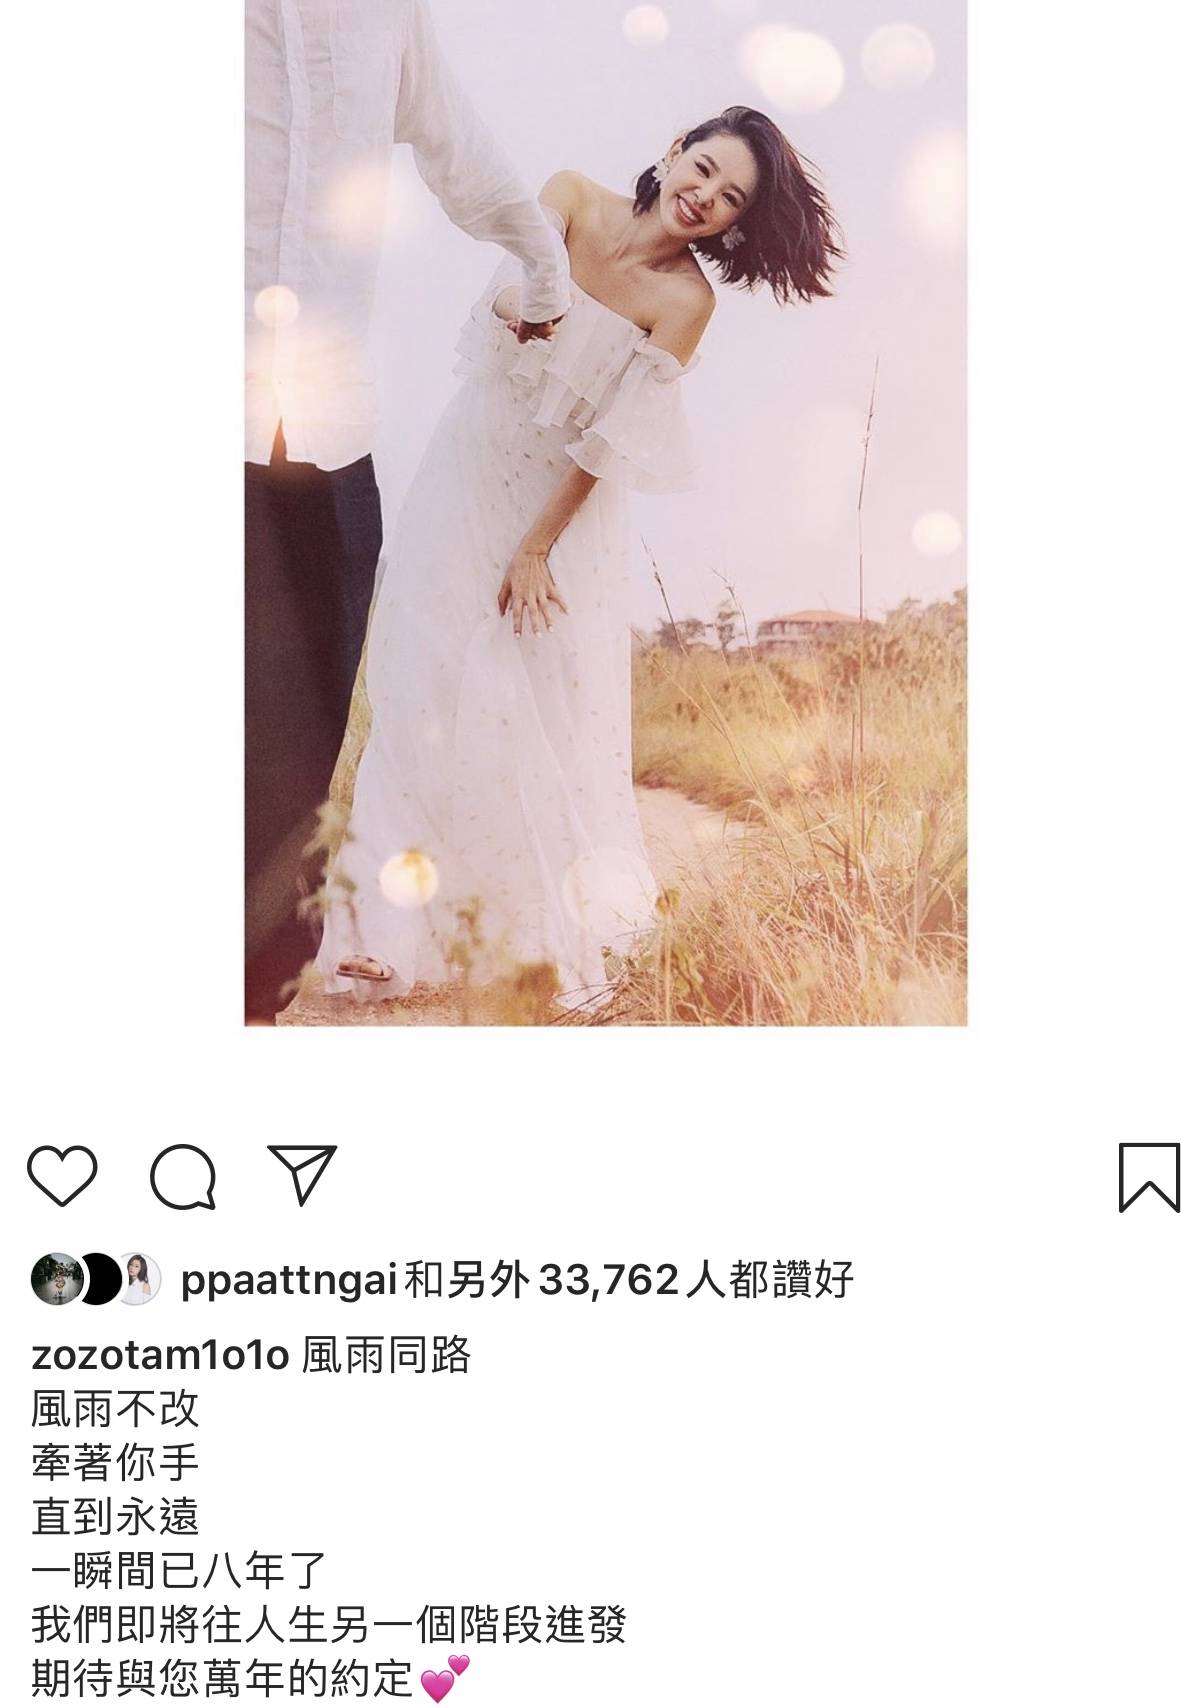 譚凱琪 被踢爆入紙登記結婚，向來對感情事低調的Zoie在社交網公布喜訊，老公只有一隻手同個身出鏡。